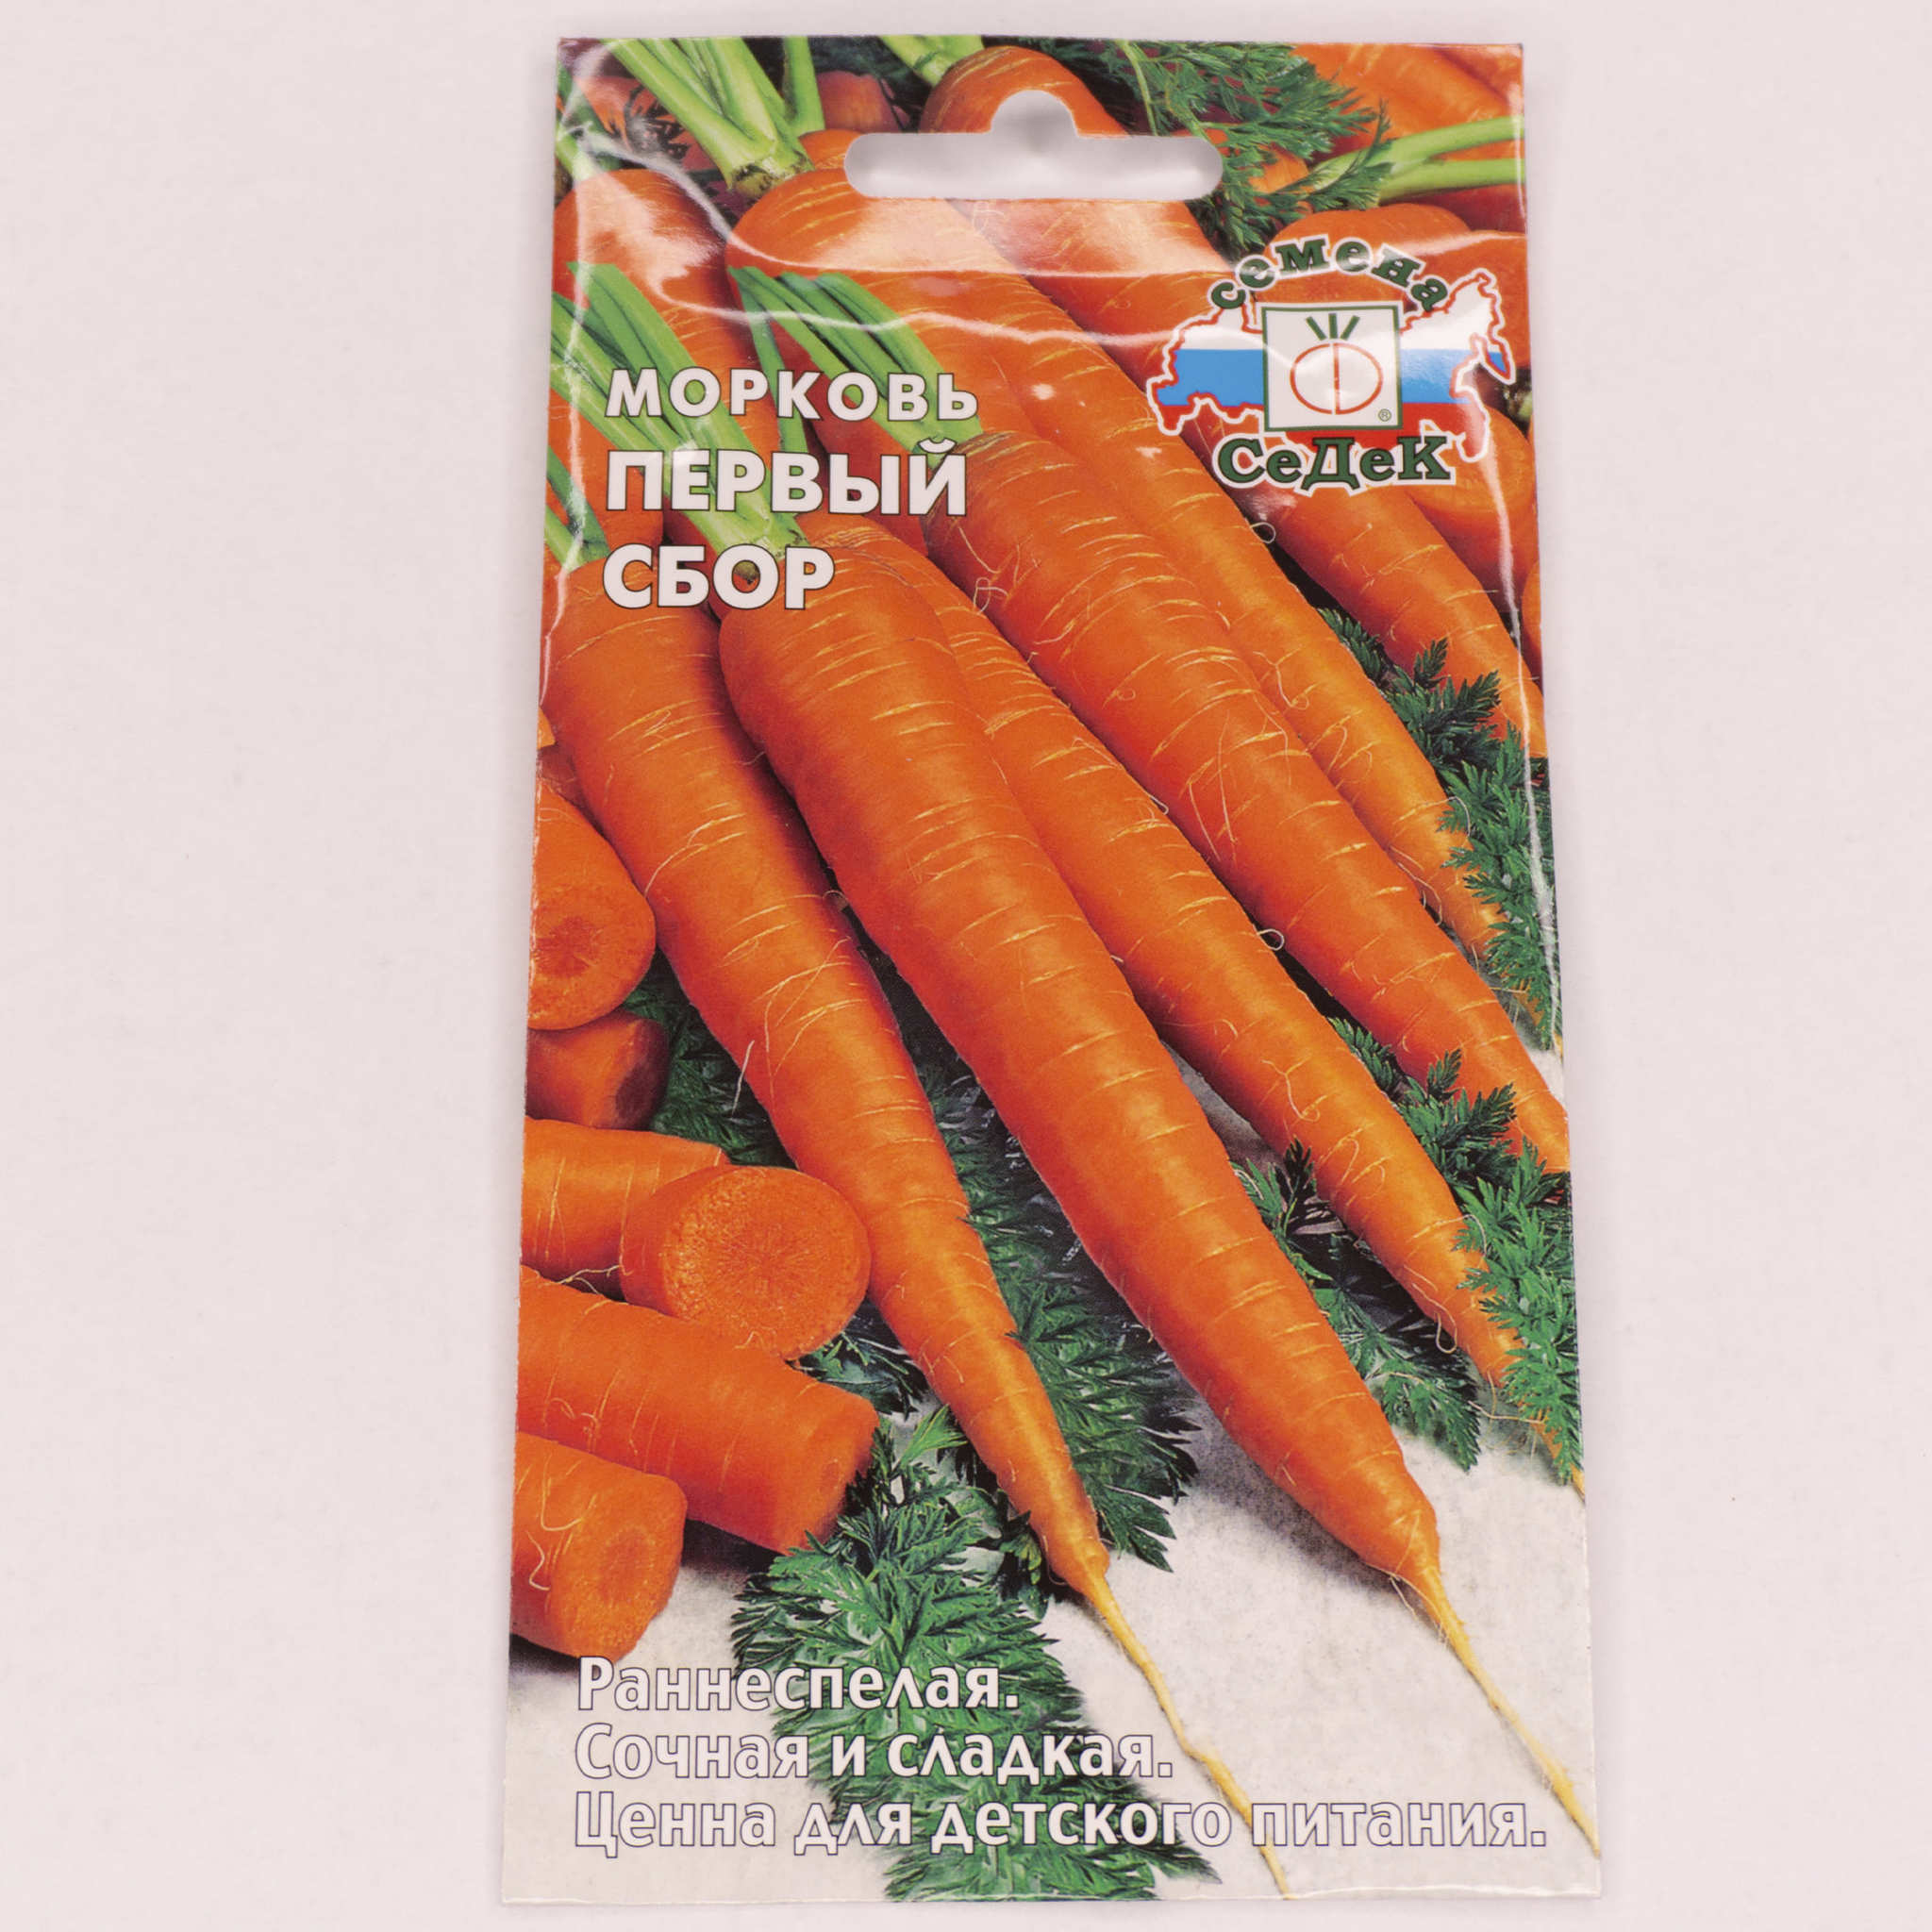 Морковь 1 разбор. Морковь первый сбор. Семена моркови для профессионалов. Морковь первый и второй год.